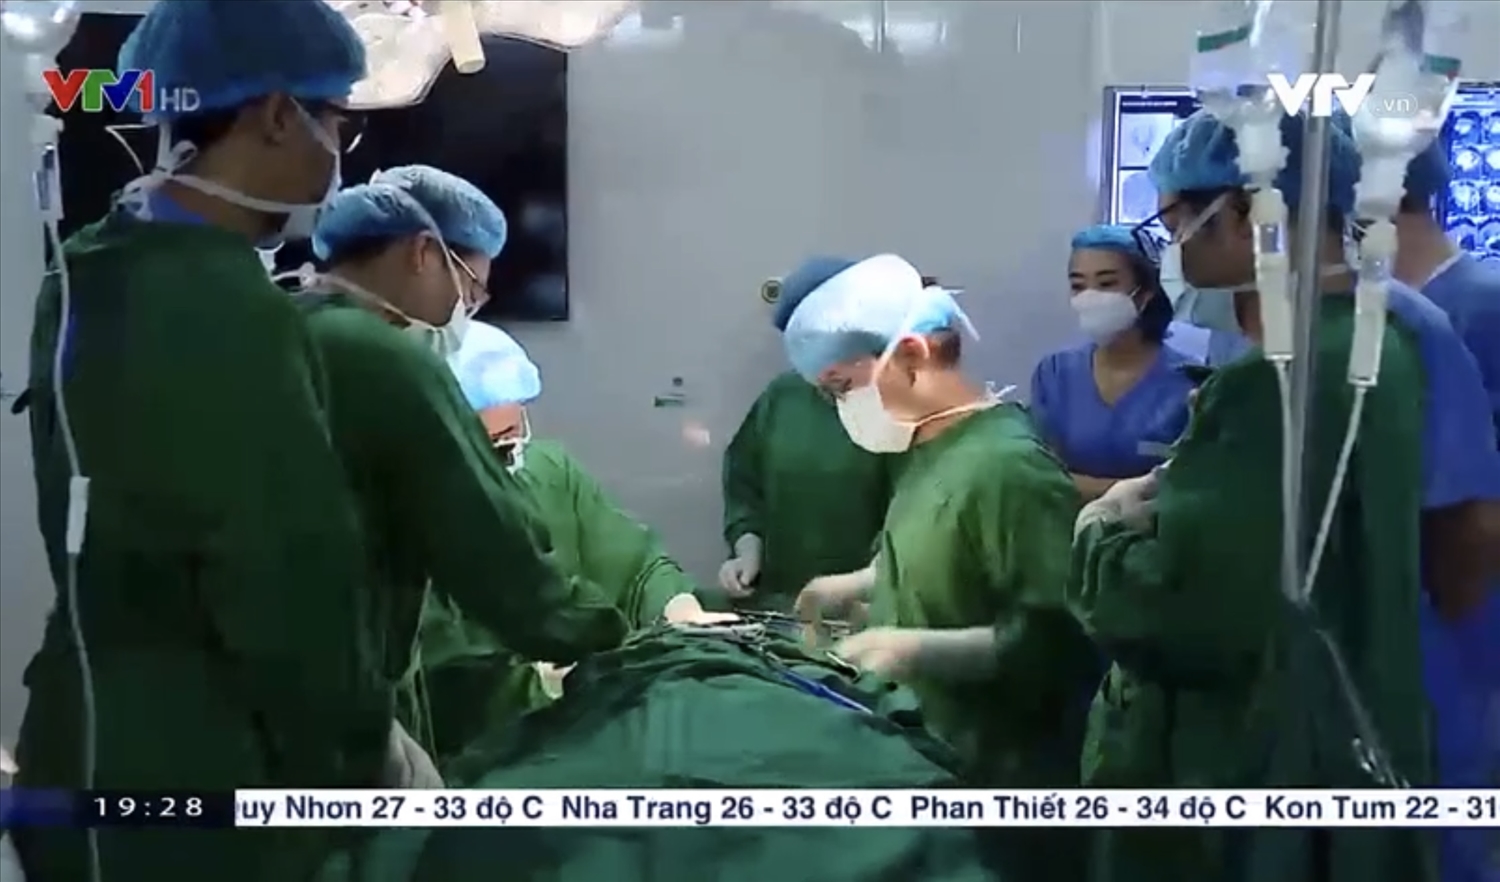 Các bác sĩ thực hiện phẫu thuật cho bệnh nhân - Ảnh VTV